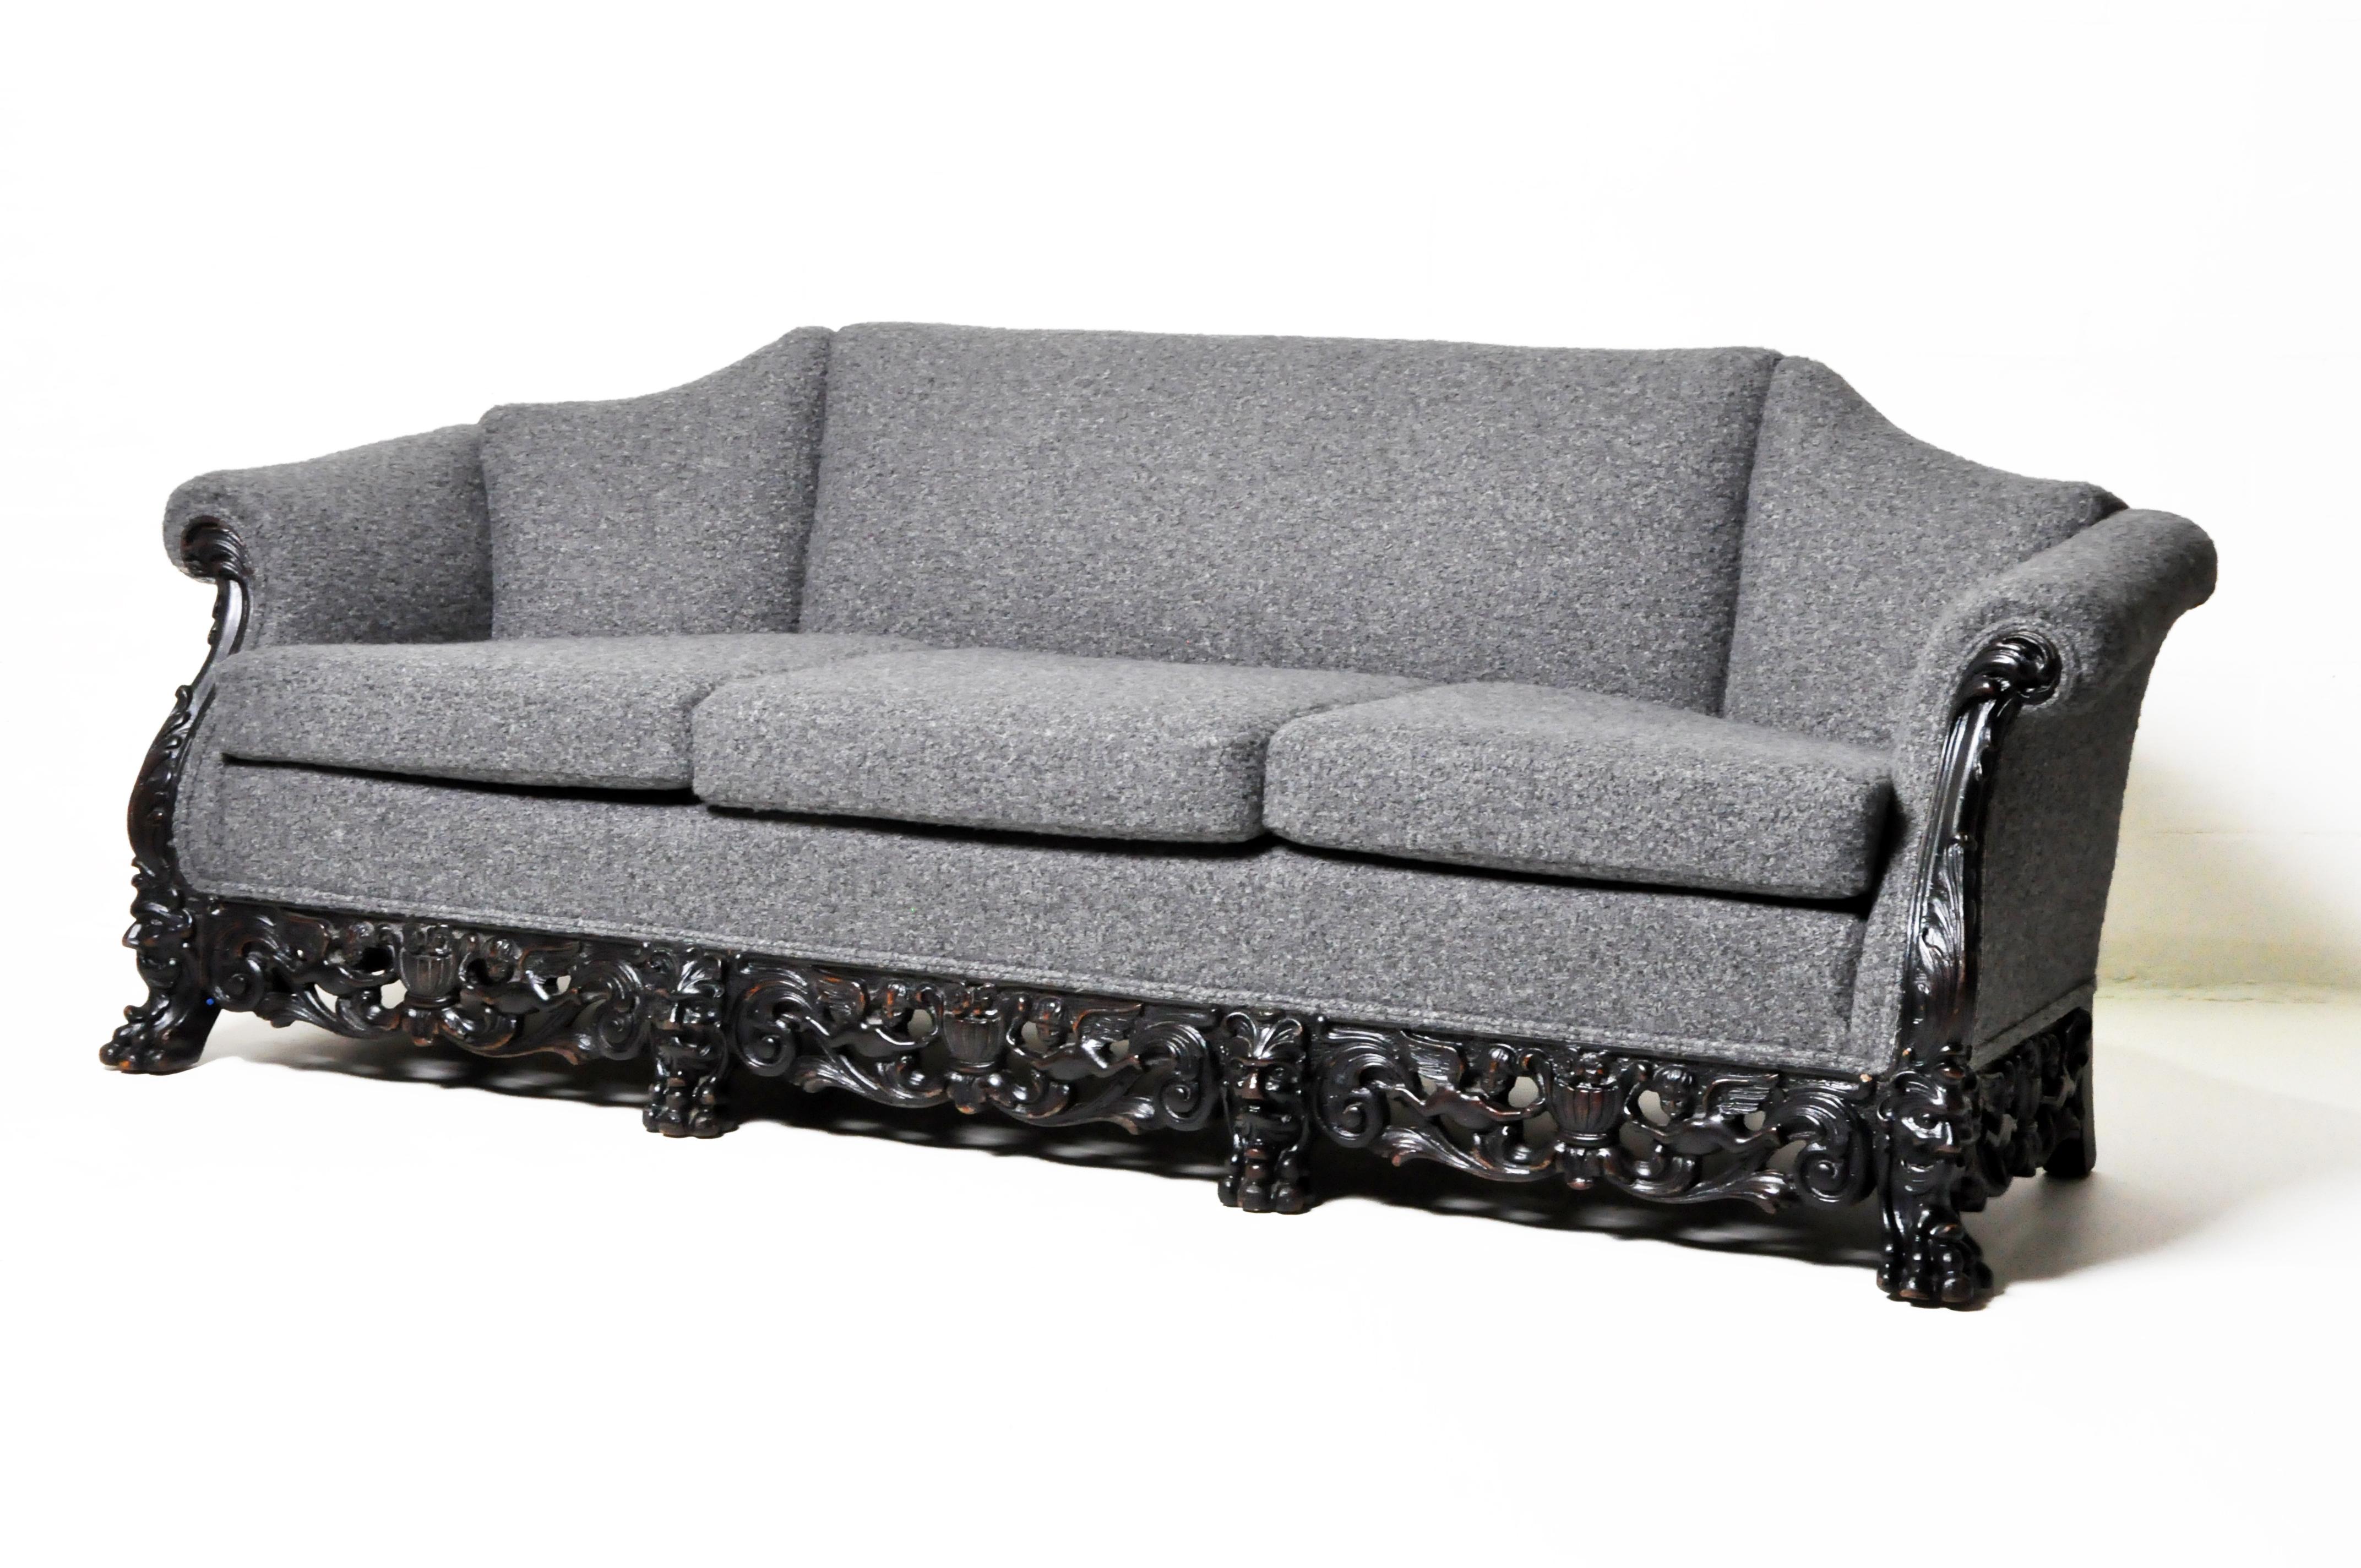 Dieses einzigartige 3-Kissen-Sofa verfügt über einen außergewöhnlichen handgeschnitzten Rahmen aus massiver Eiche mit Klauenfüßen, wirbelnden Ranken und geflügelten Cherubinen. Die weiche Bouclé-Polsterung und die Innenfüllung sind neu, der